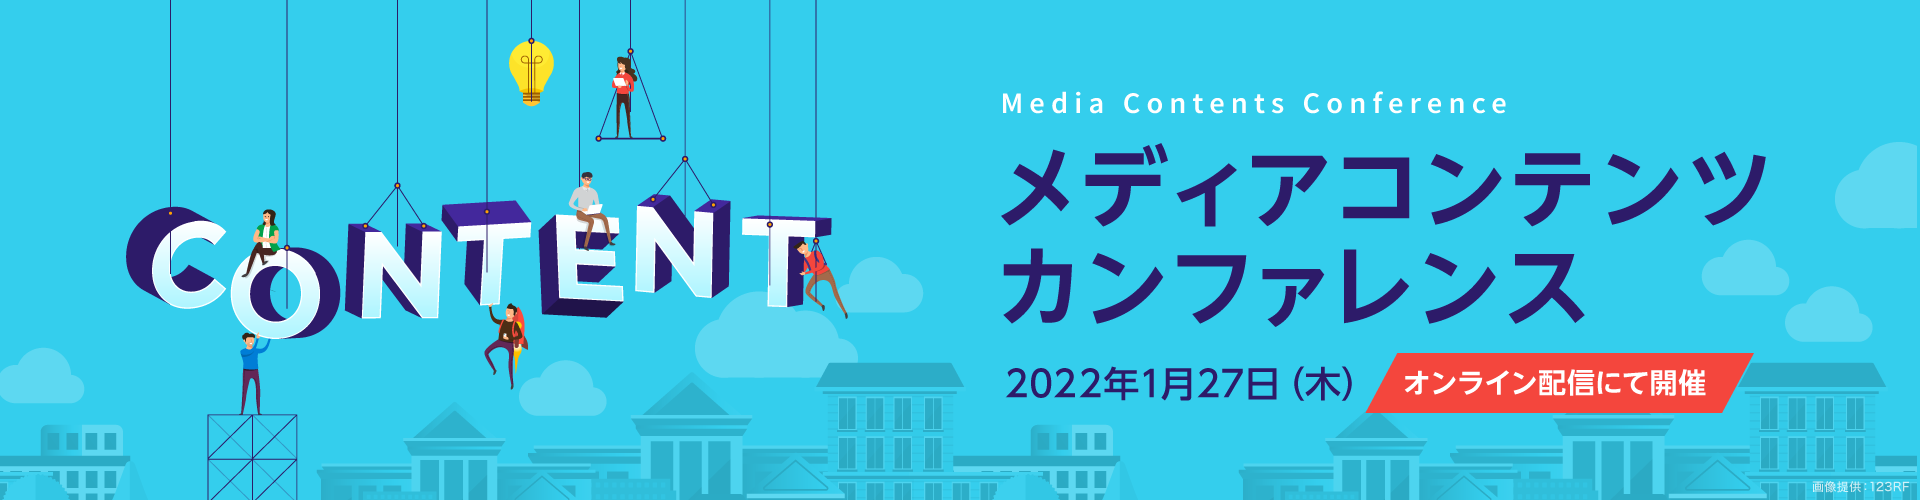 メディアコンテンツカンファレンス2022